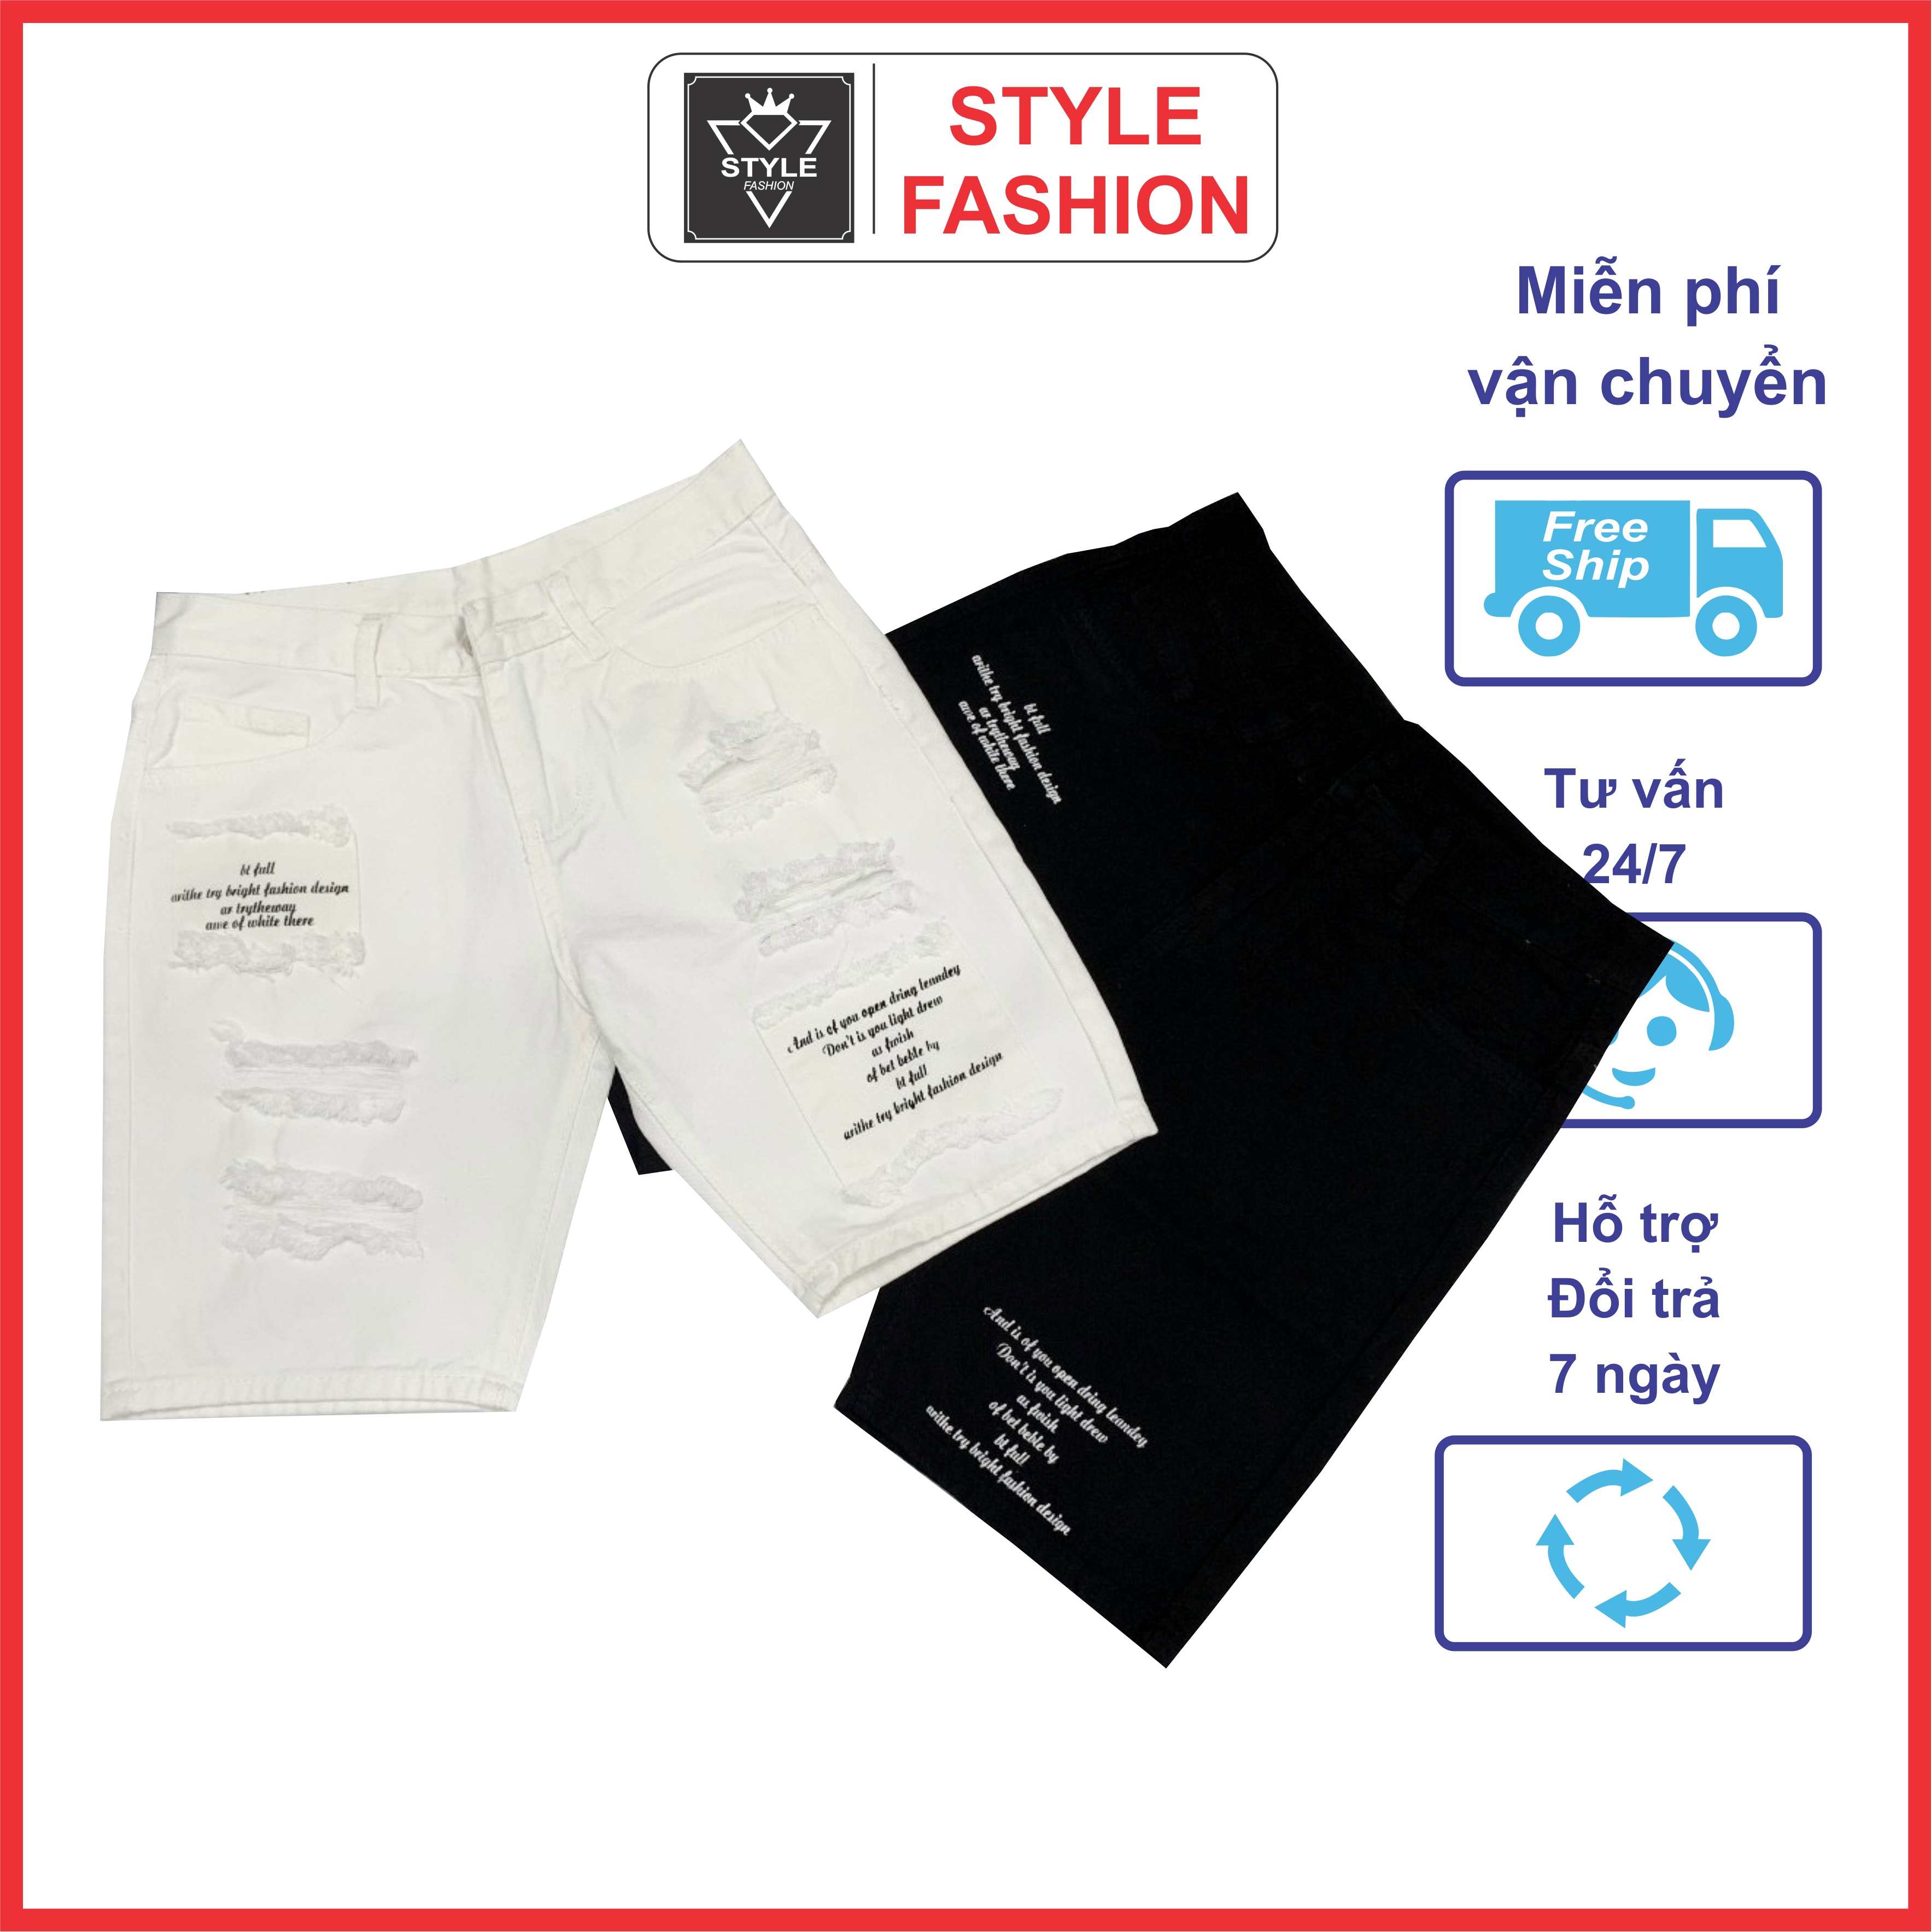 [FREESHIP] Quần short jean nam rách xướt chất bò co dãn phối họa tiết chữ 2 màu trắng,đen giá rẻ STYLE_FASHION_VN